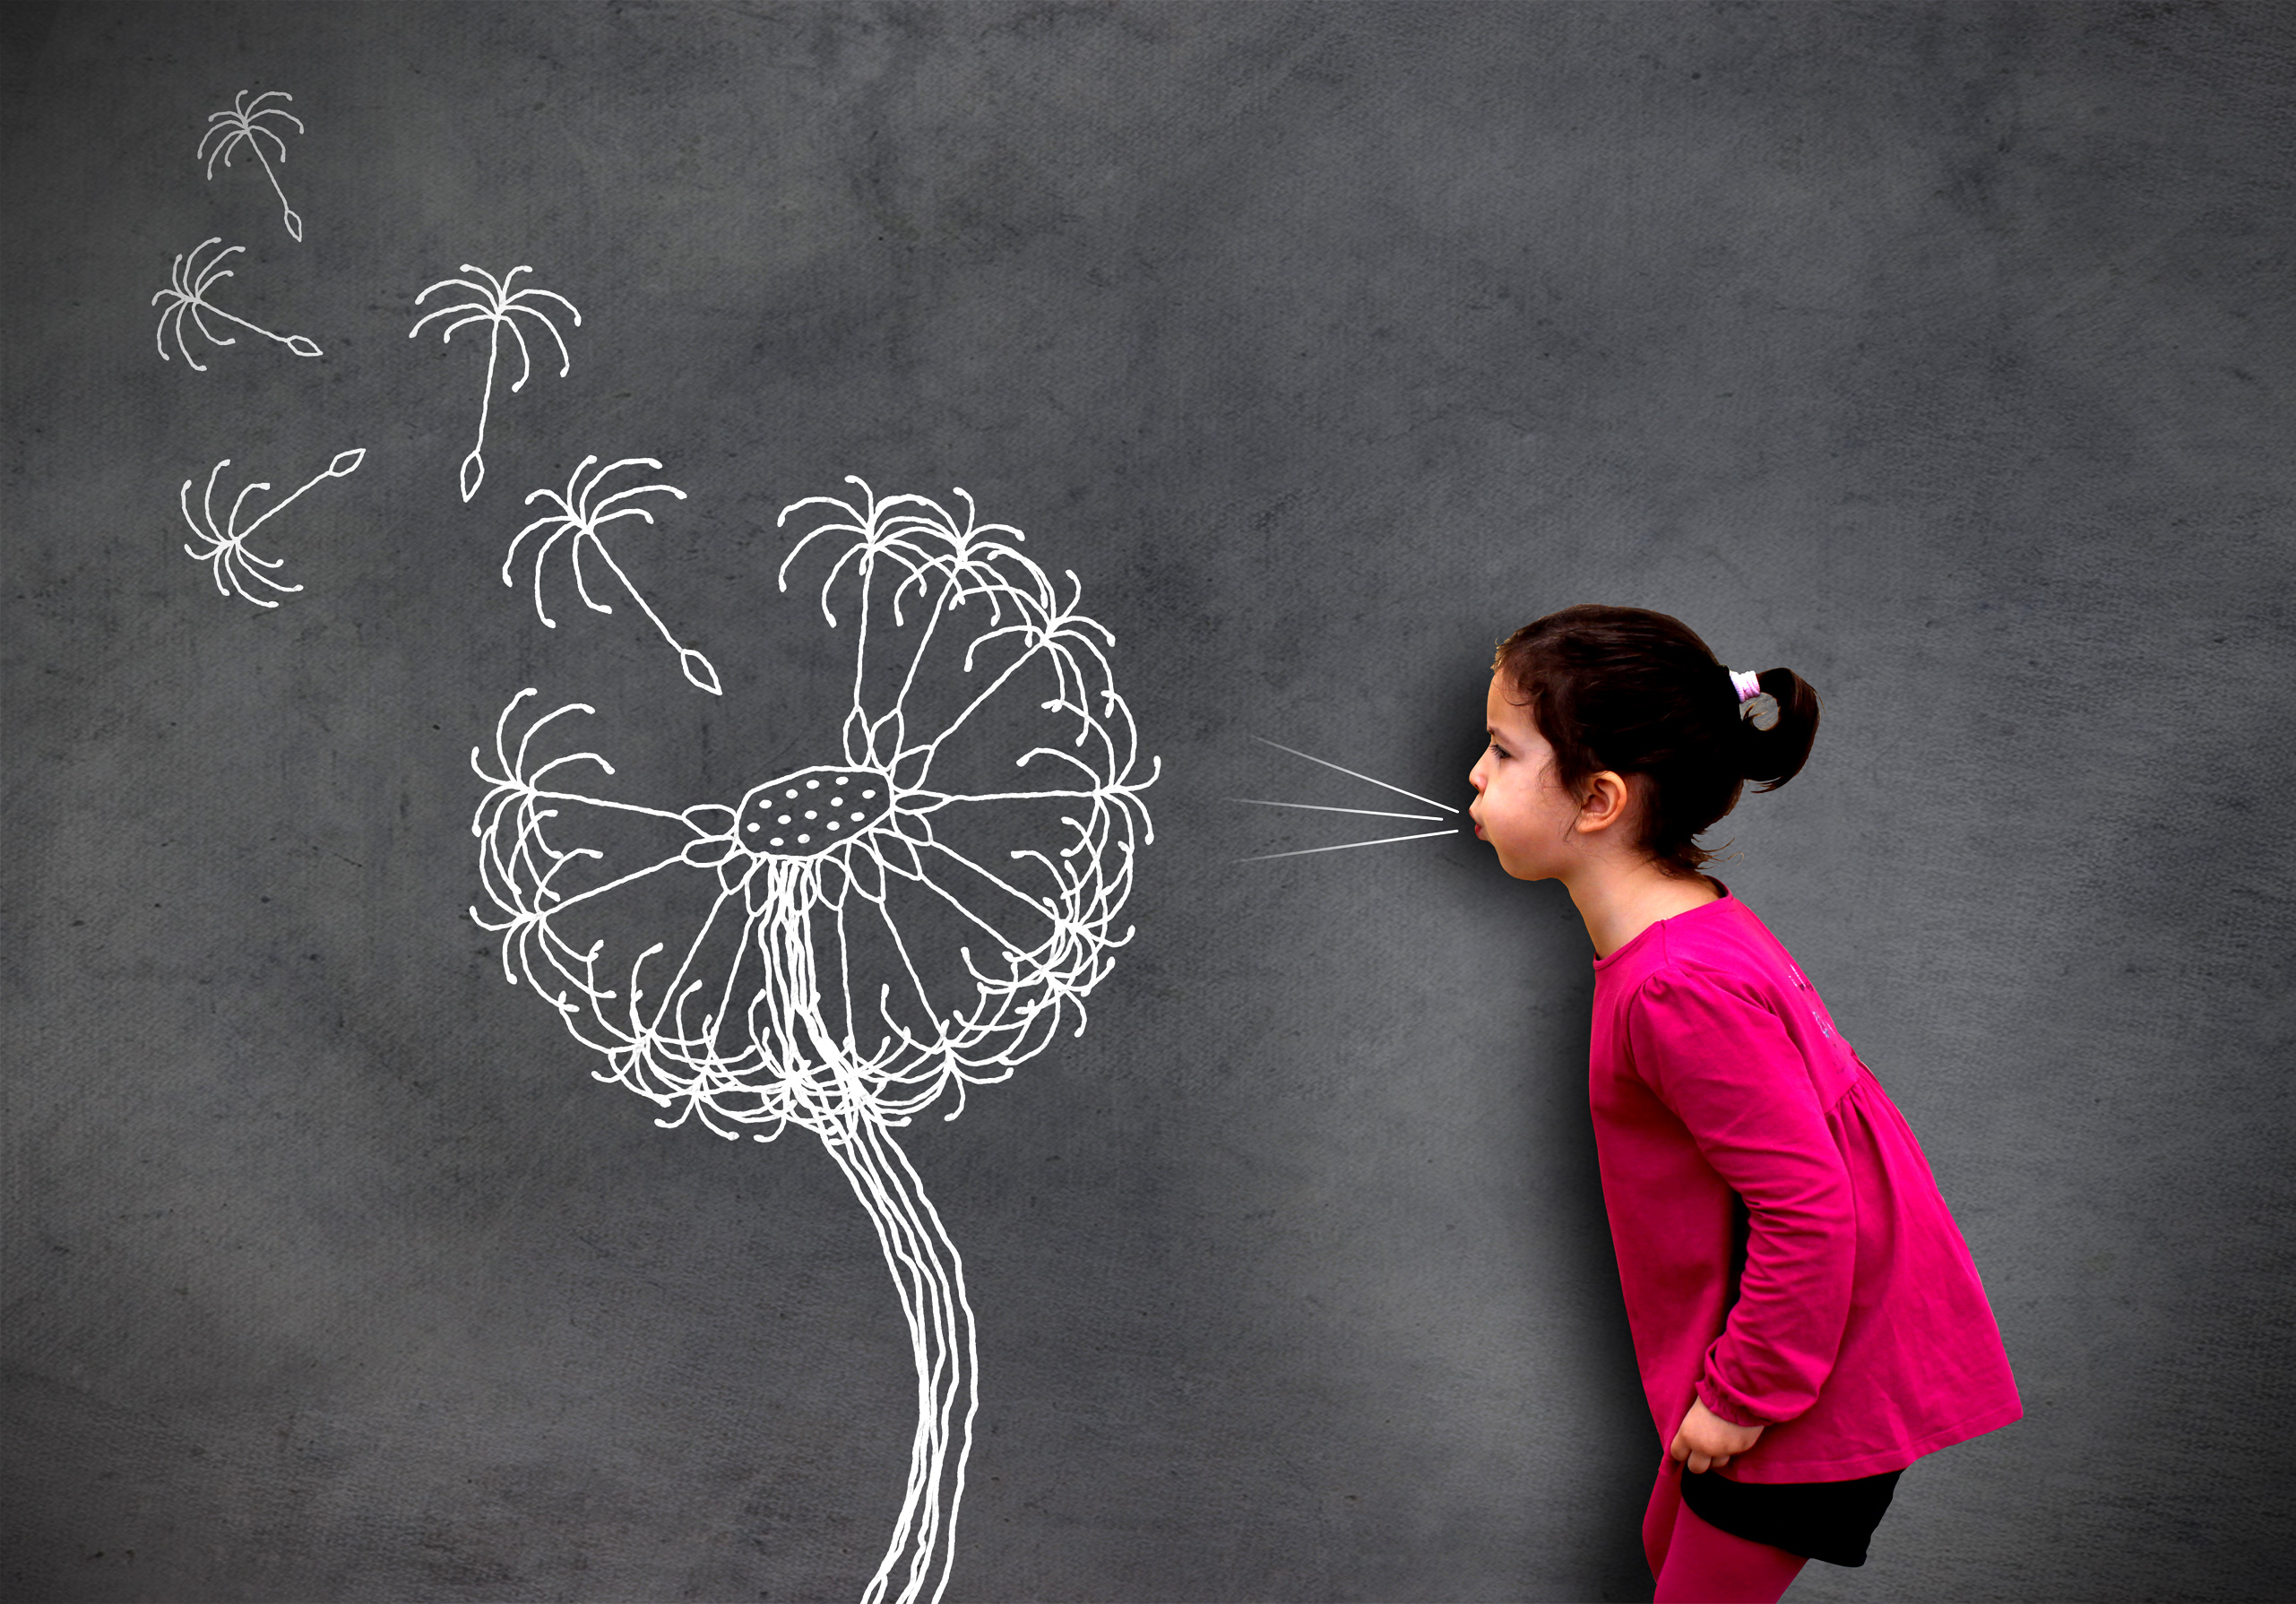 Little cute girl blowing dandelion seeds on chalkboard - Hope an